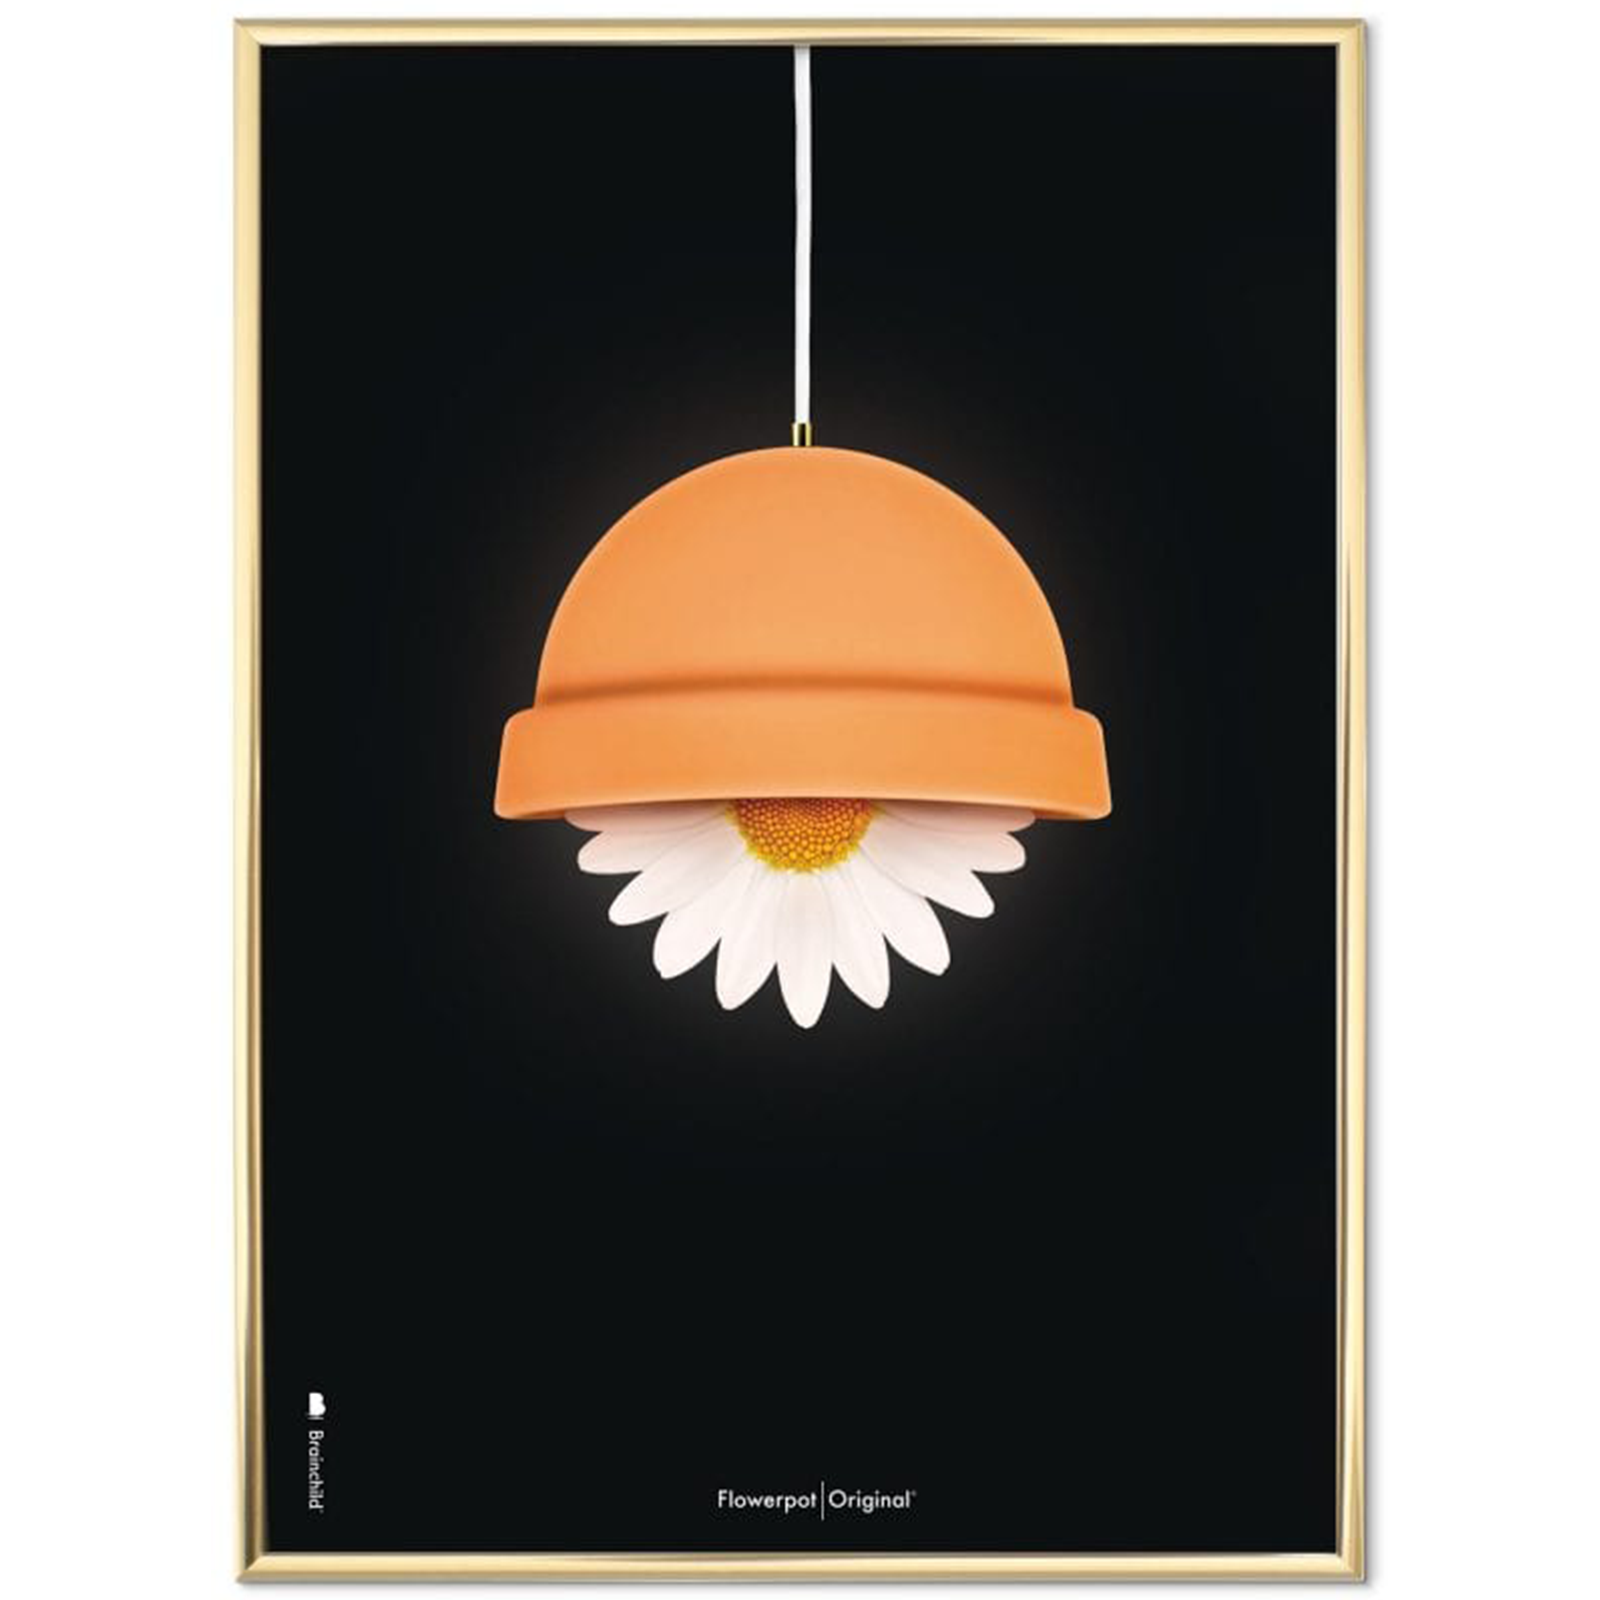 Plakat med Flowerpot - 50 x 70 cm